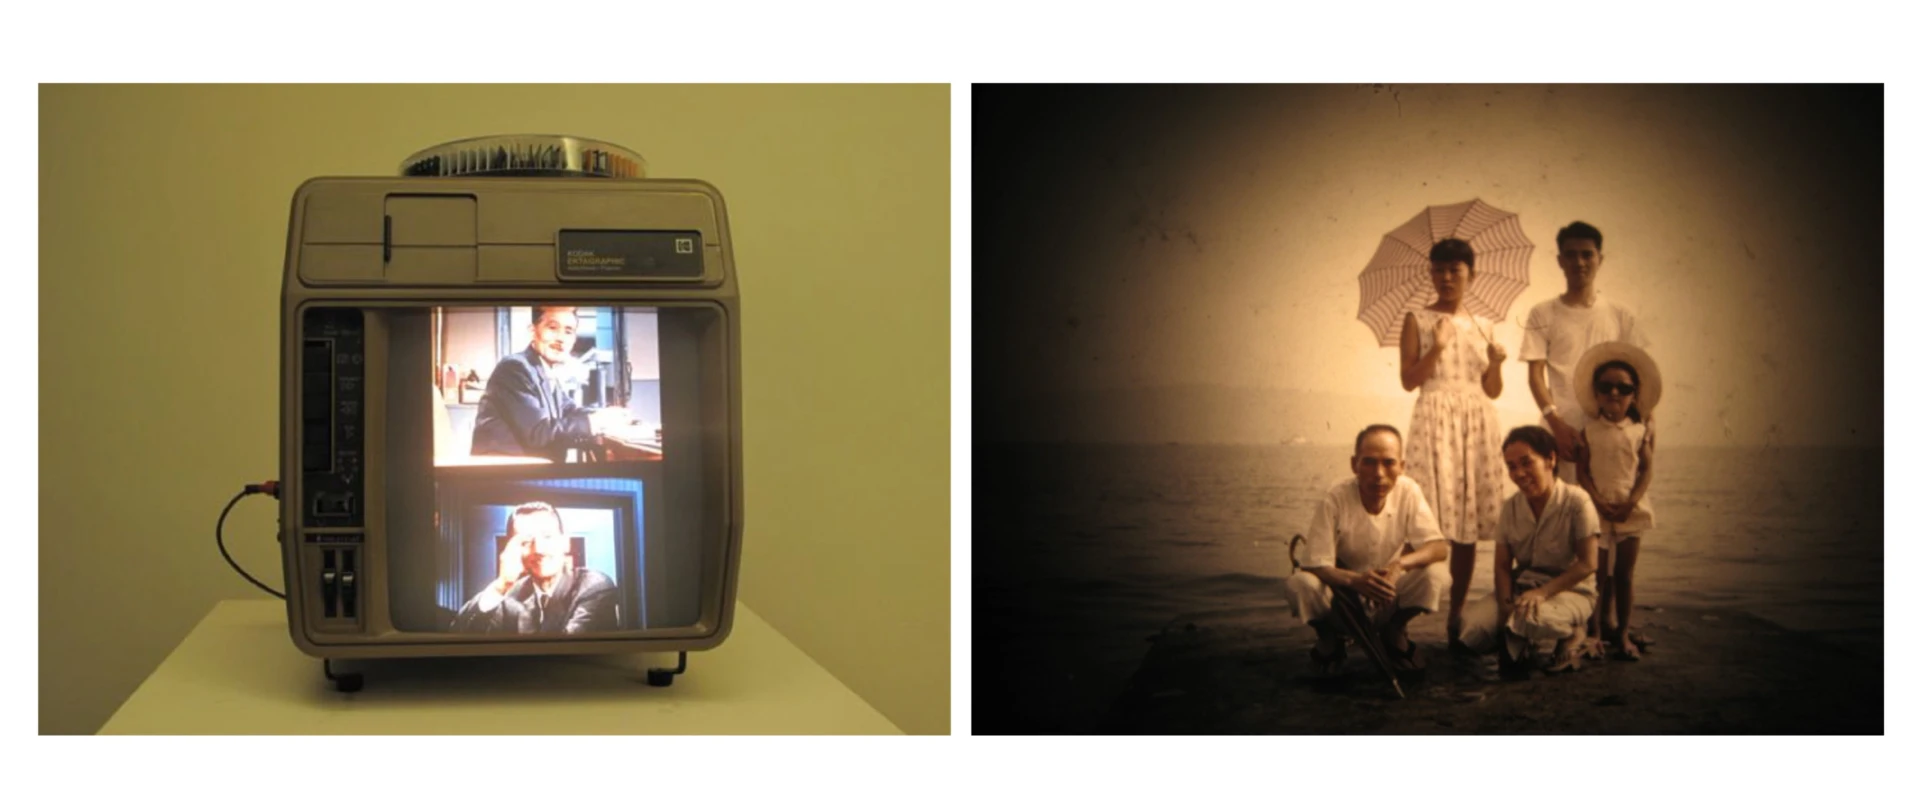 「幻燈簡報電影」系列之六《秋刀魚的滋味》內投影幻燈機版，2014-圖片